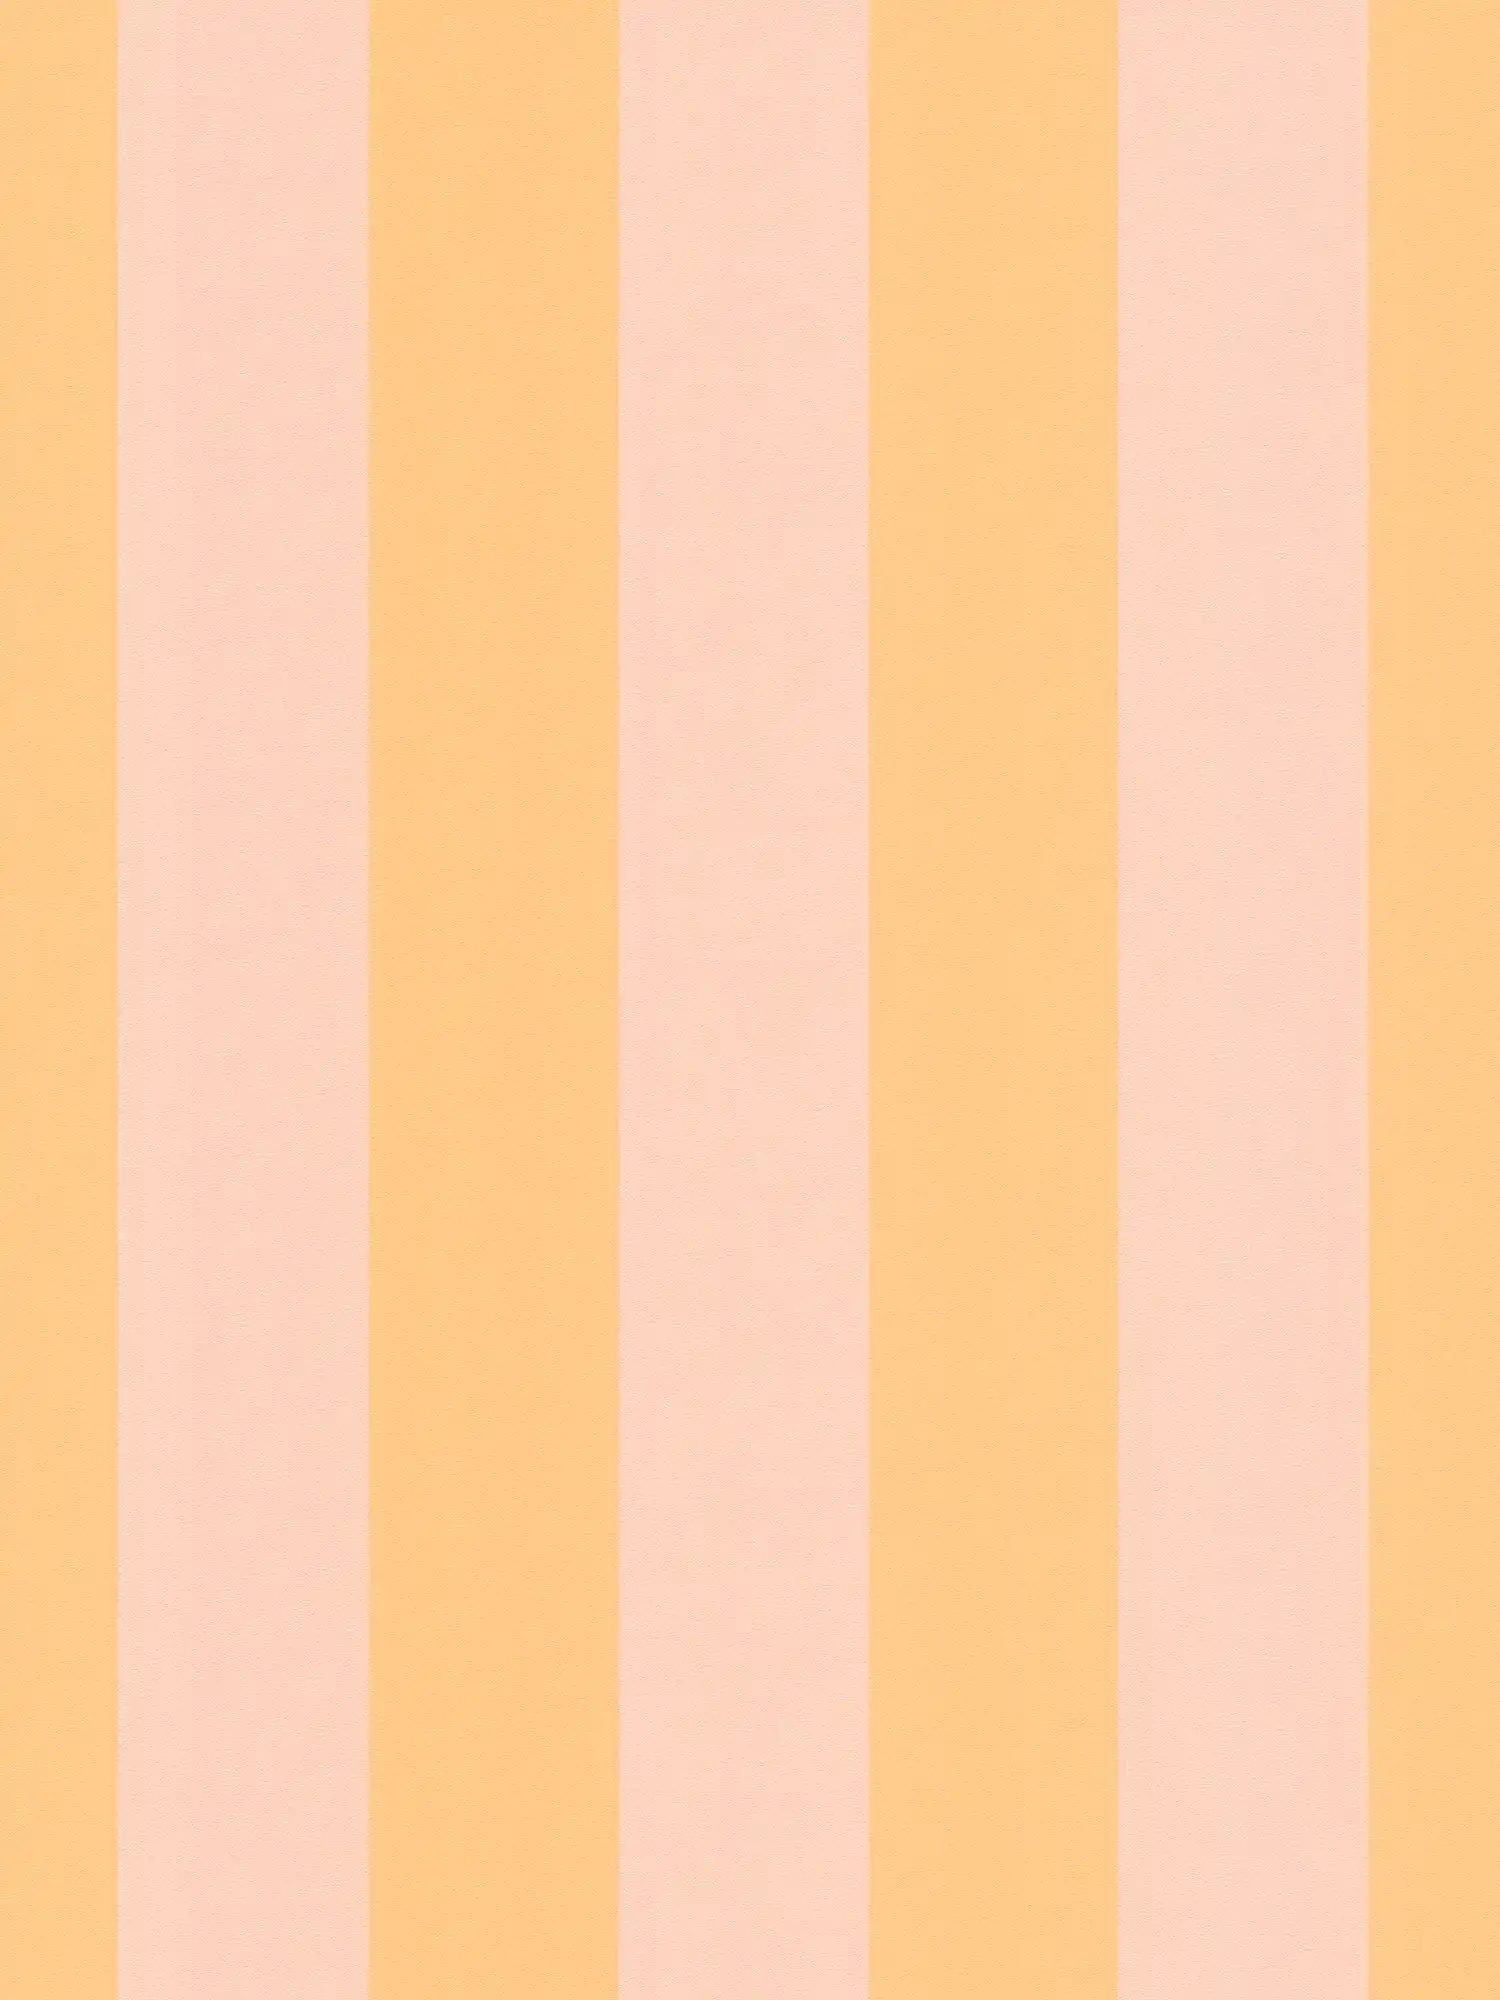 Vliestapete mit Blockstreifen in sanften Farbtönen – Orange, Rosa
